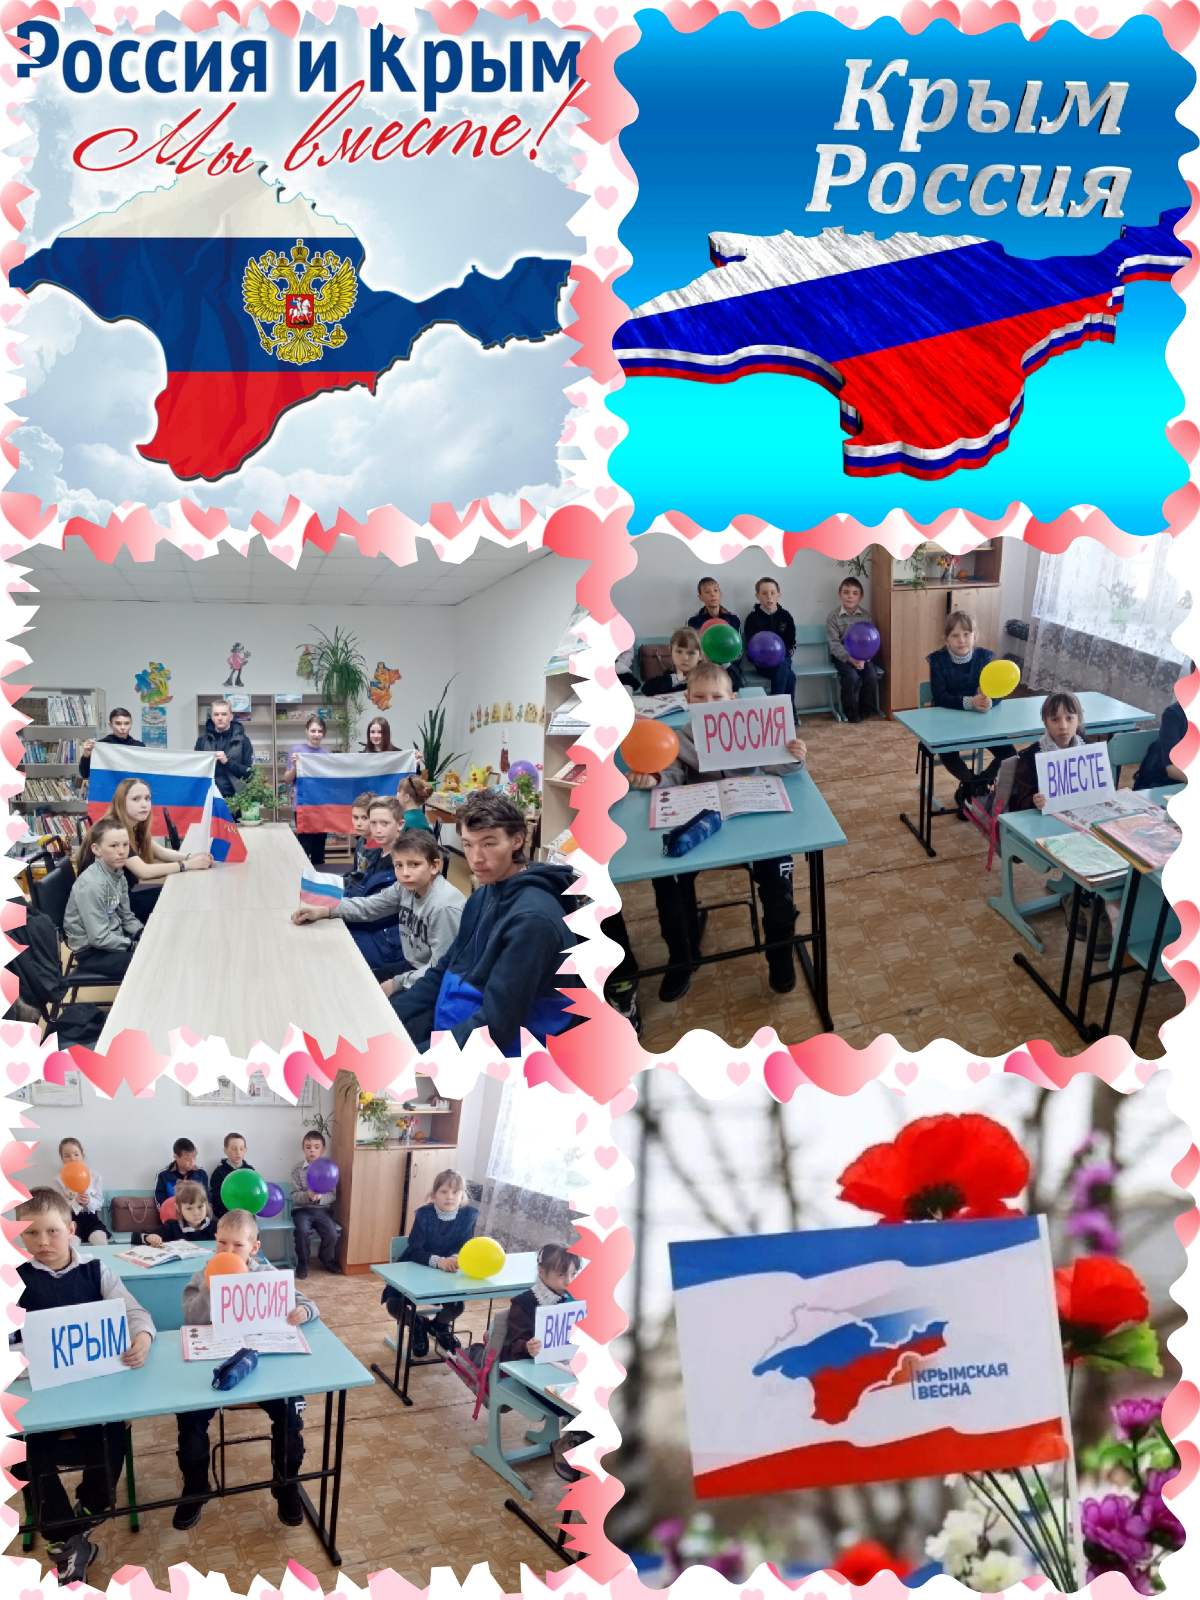 18 марта 2014 года произошло важное историческое событие присоединение Крыма к России